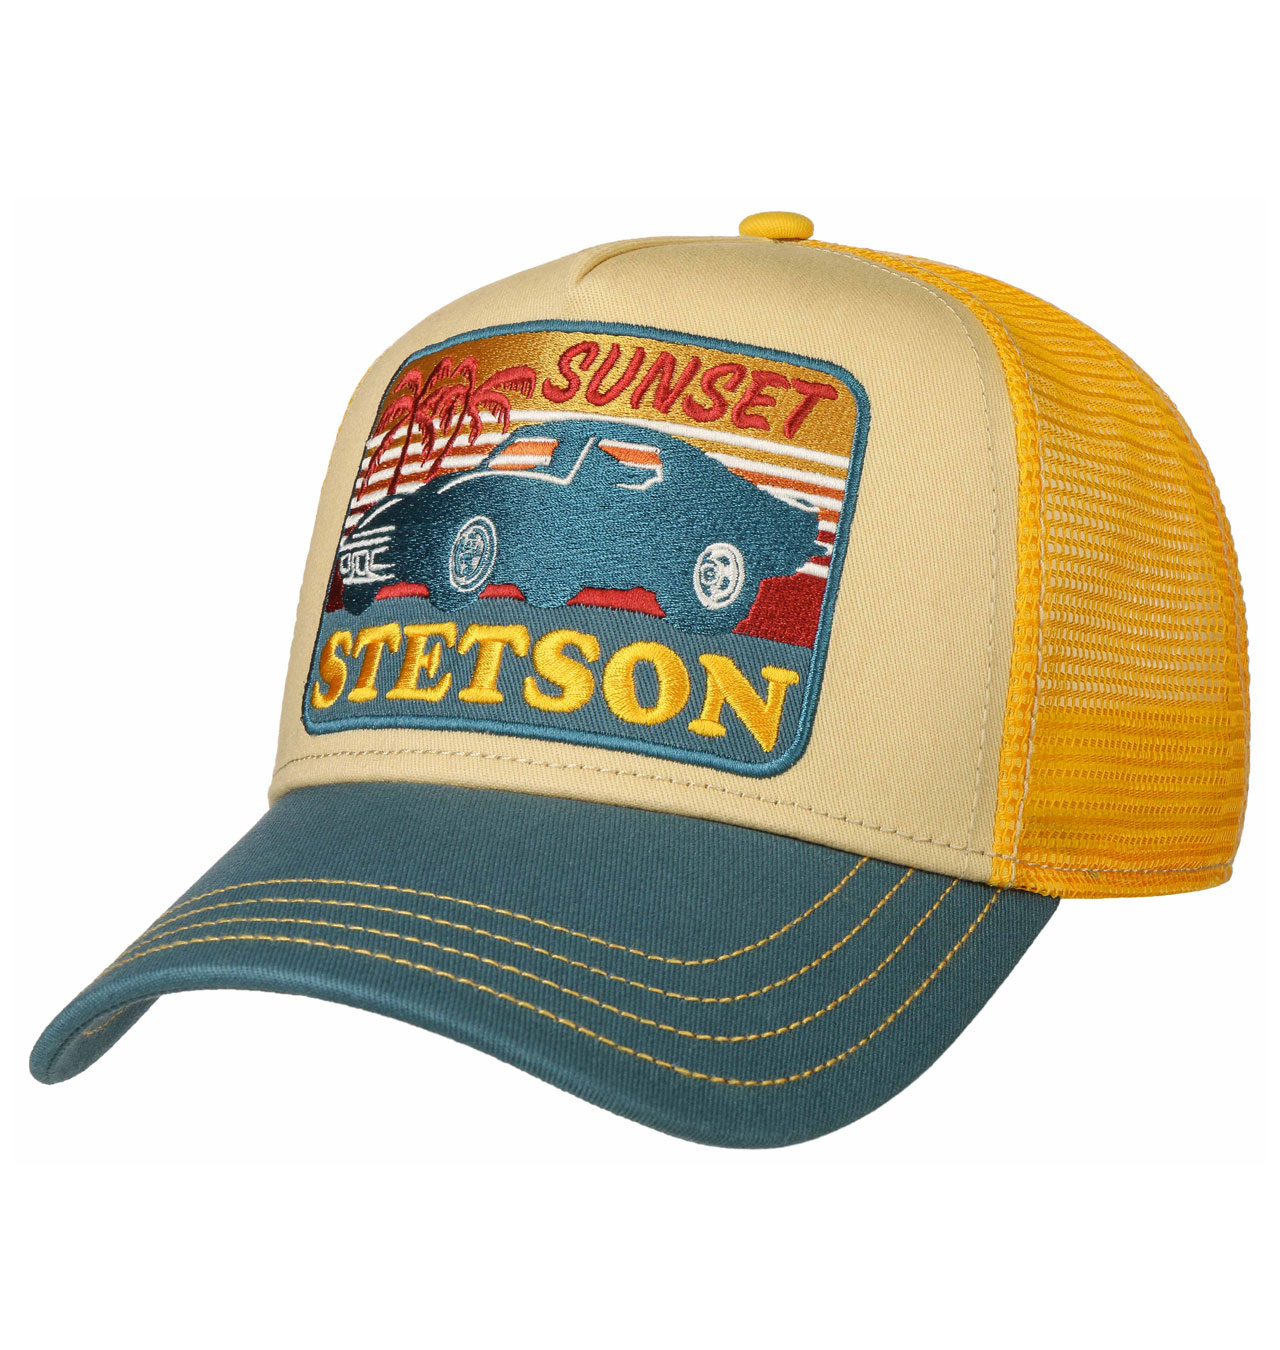 Stetson - Sunset Trucker Cap - Yellow